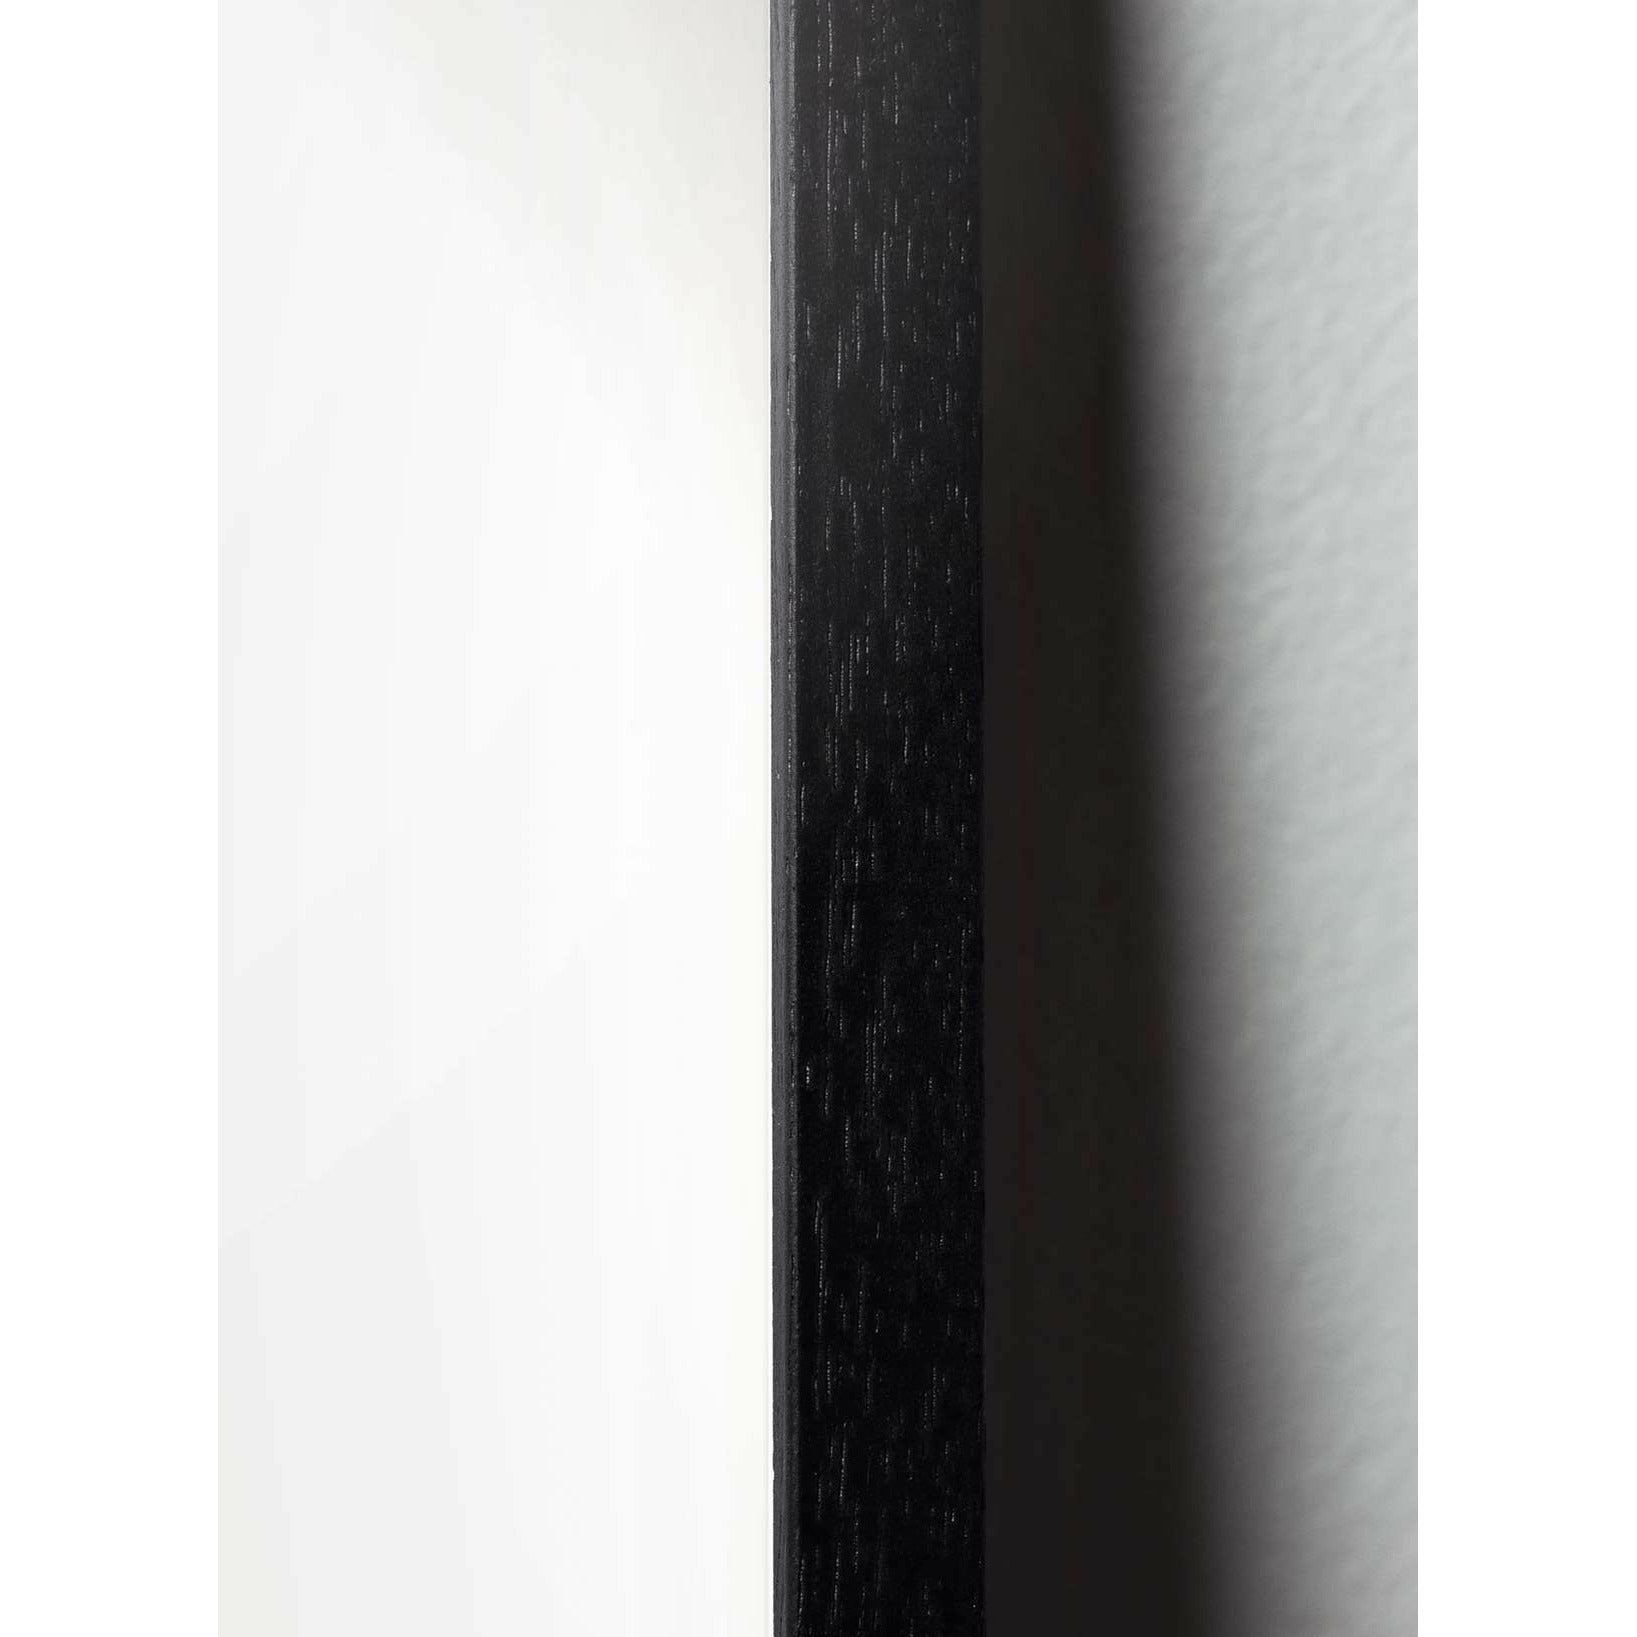 Cartel de icono de diseño de nieve de creación, marco hecho de madera lacada negra de 70 x100 cm, gris